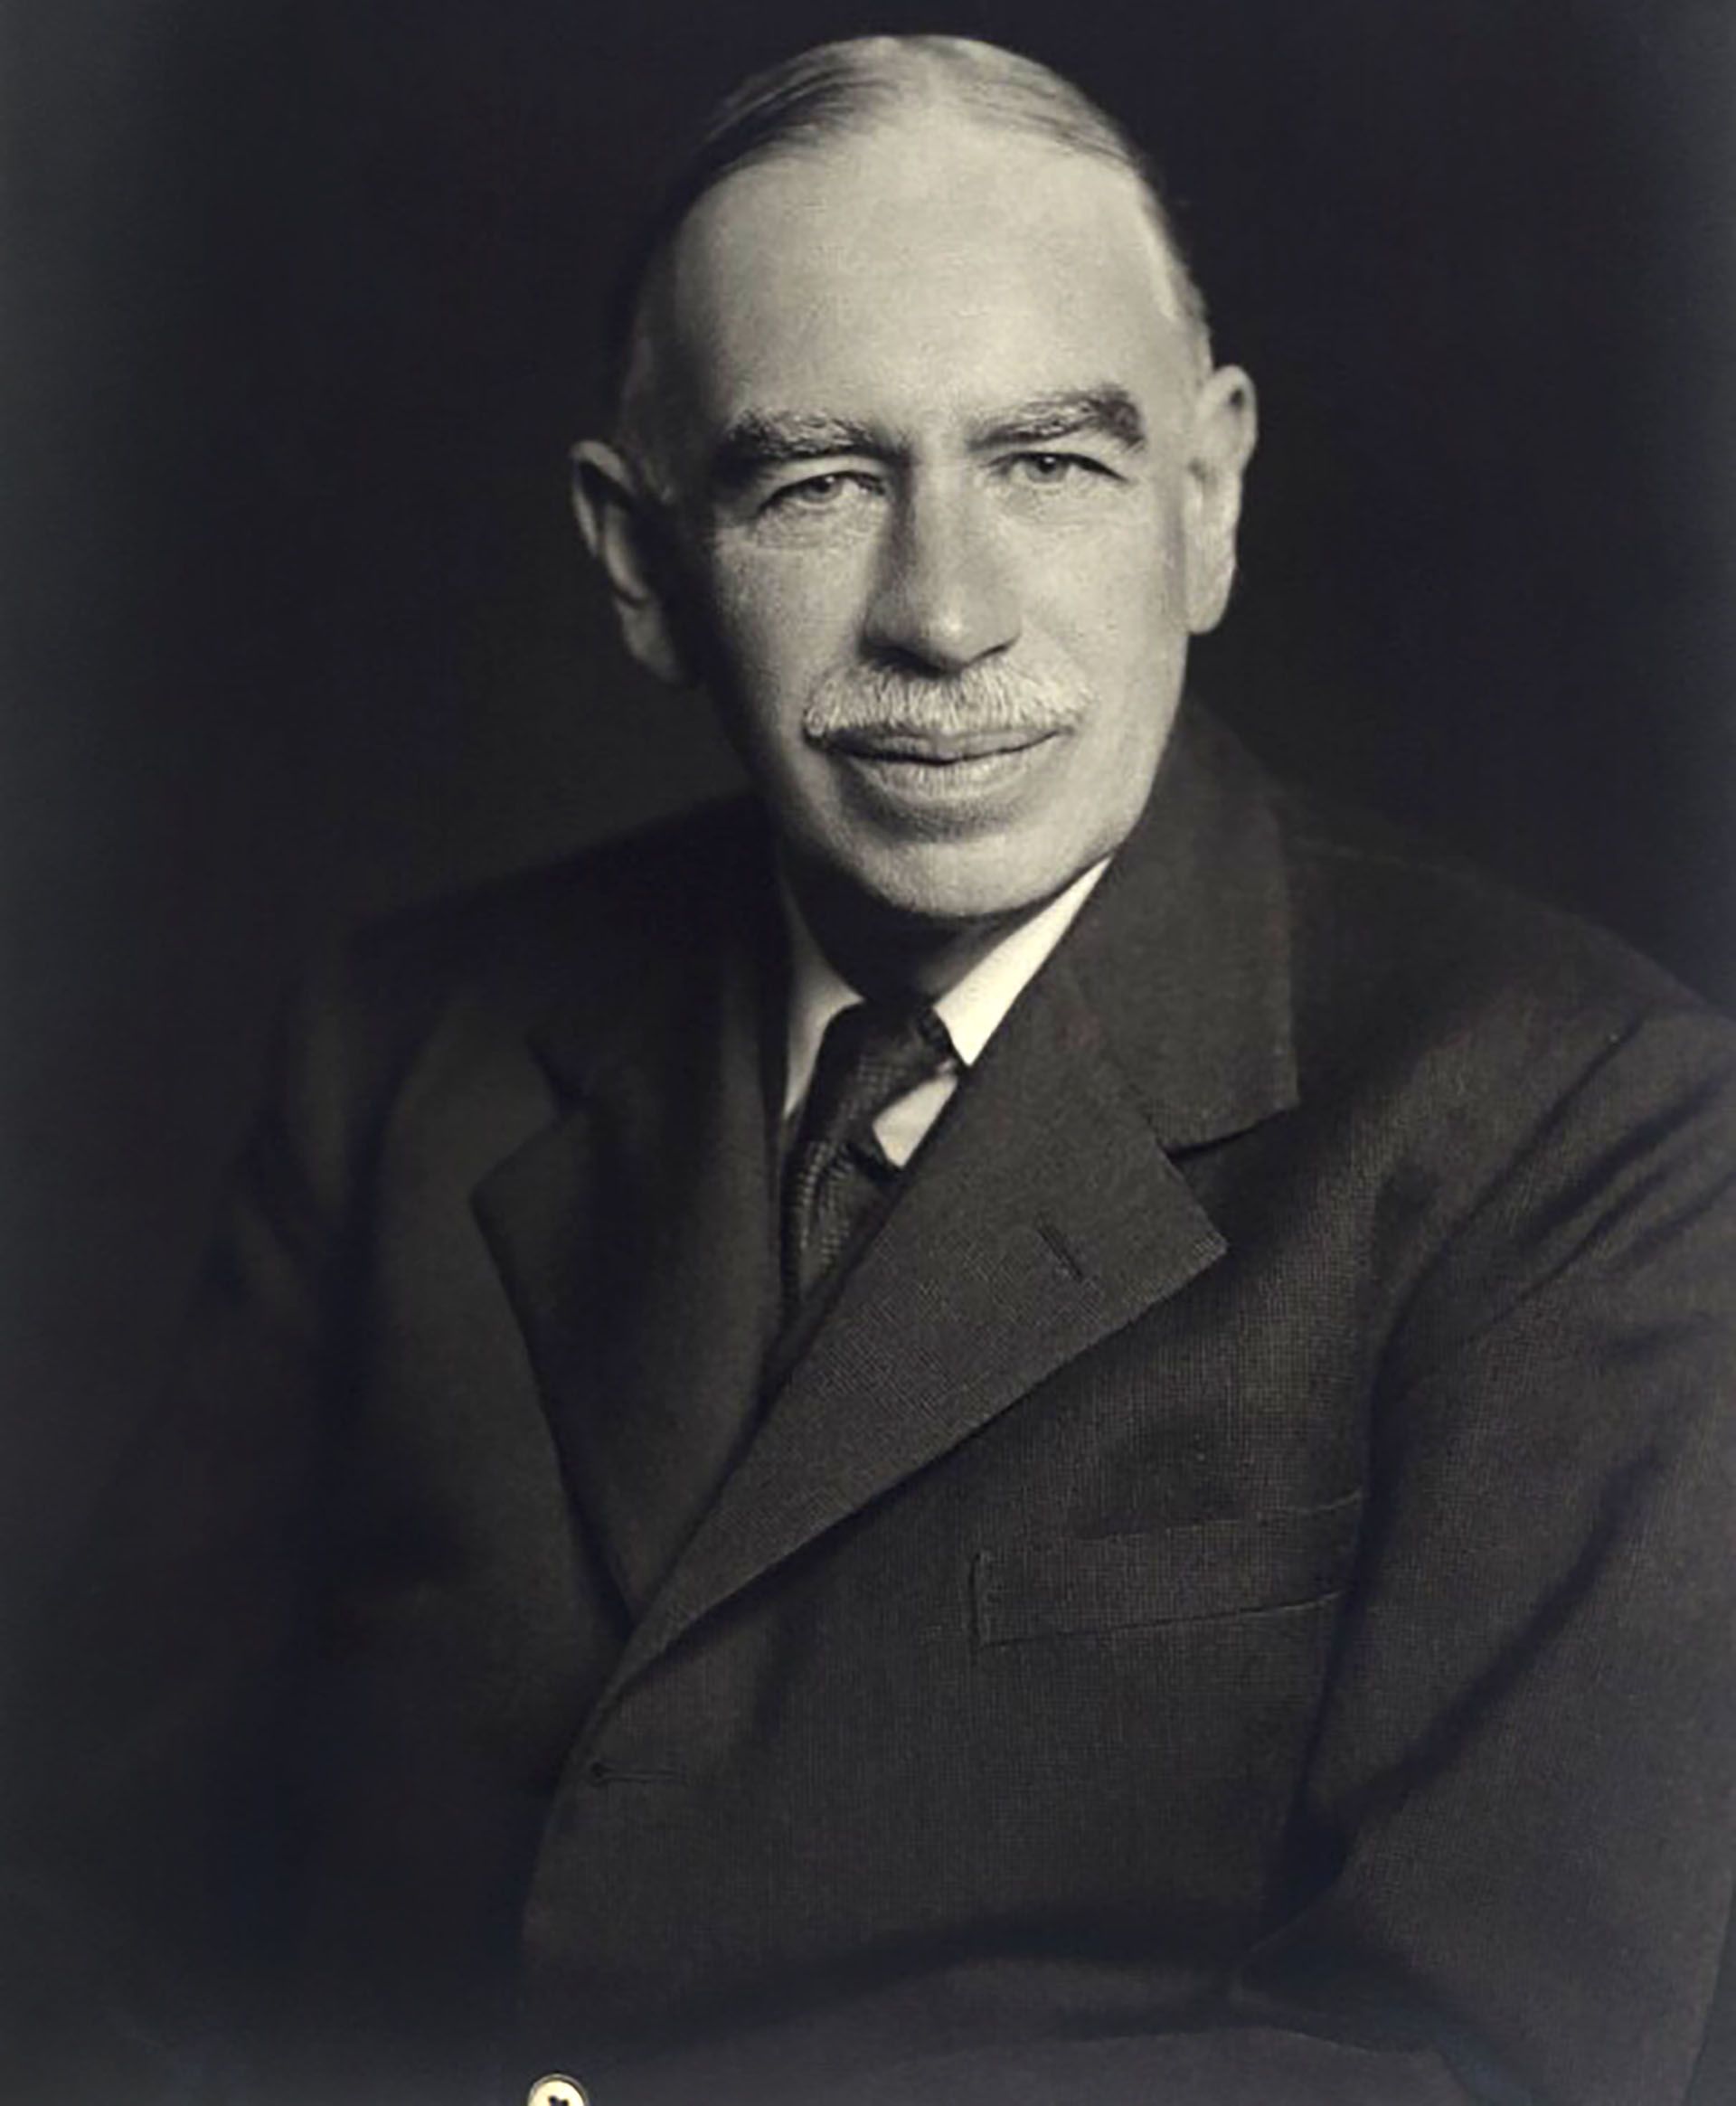 John Maynard Keynes, ilustre economista inglés y representante británico en Bretton Woods